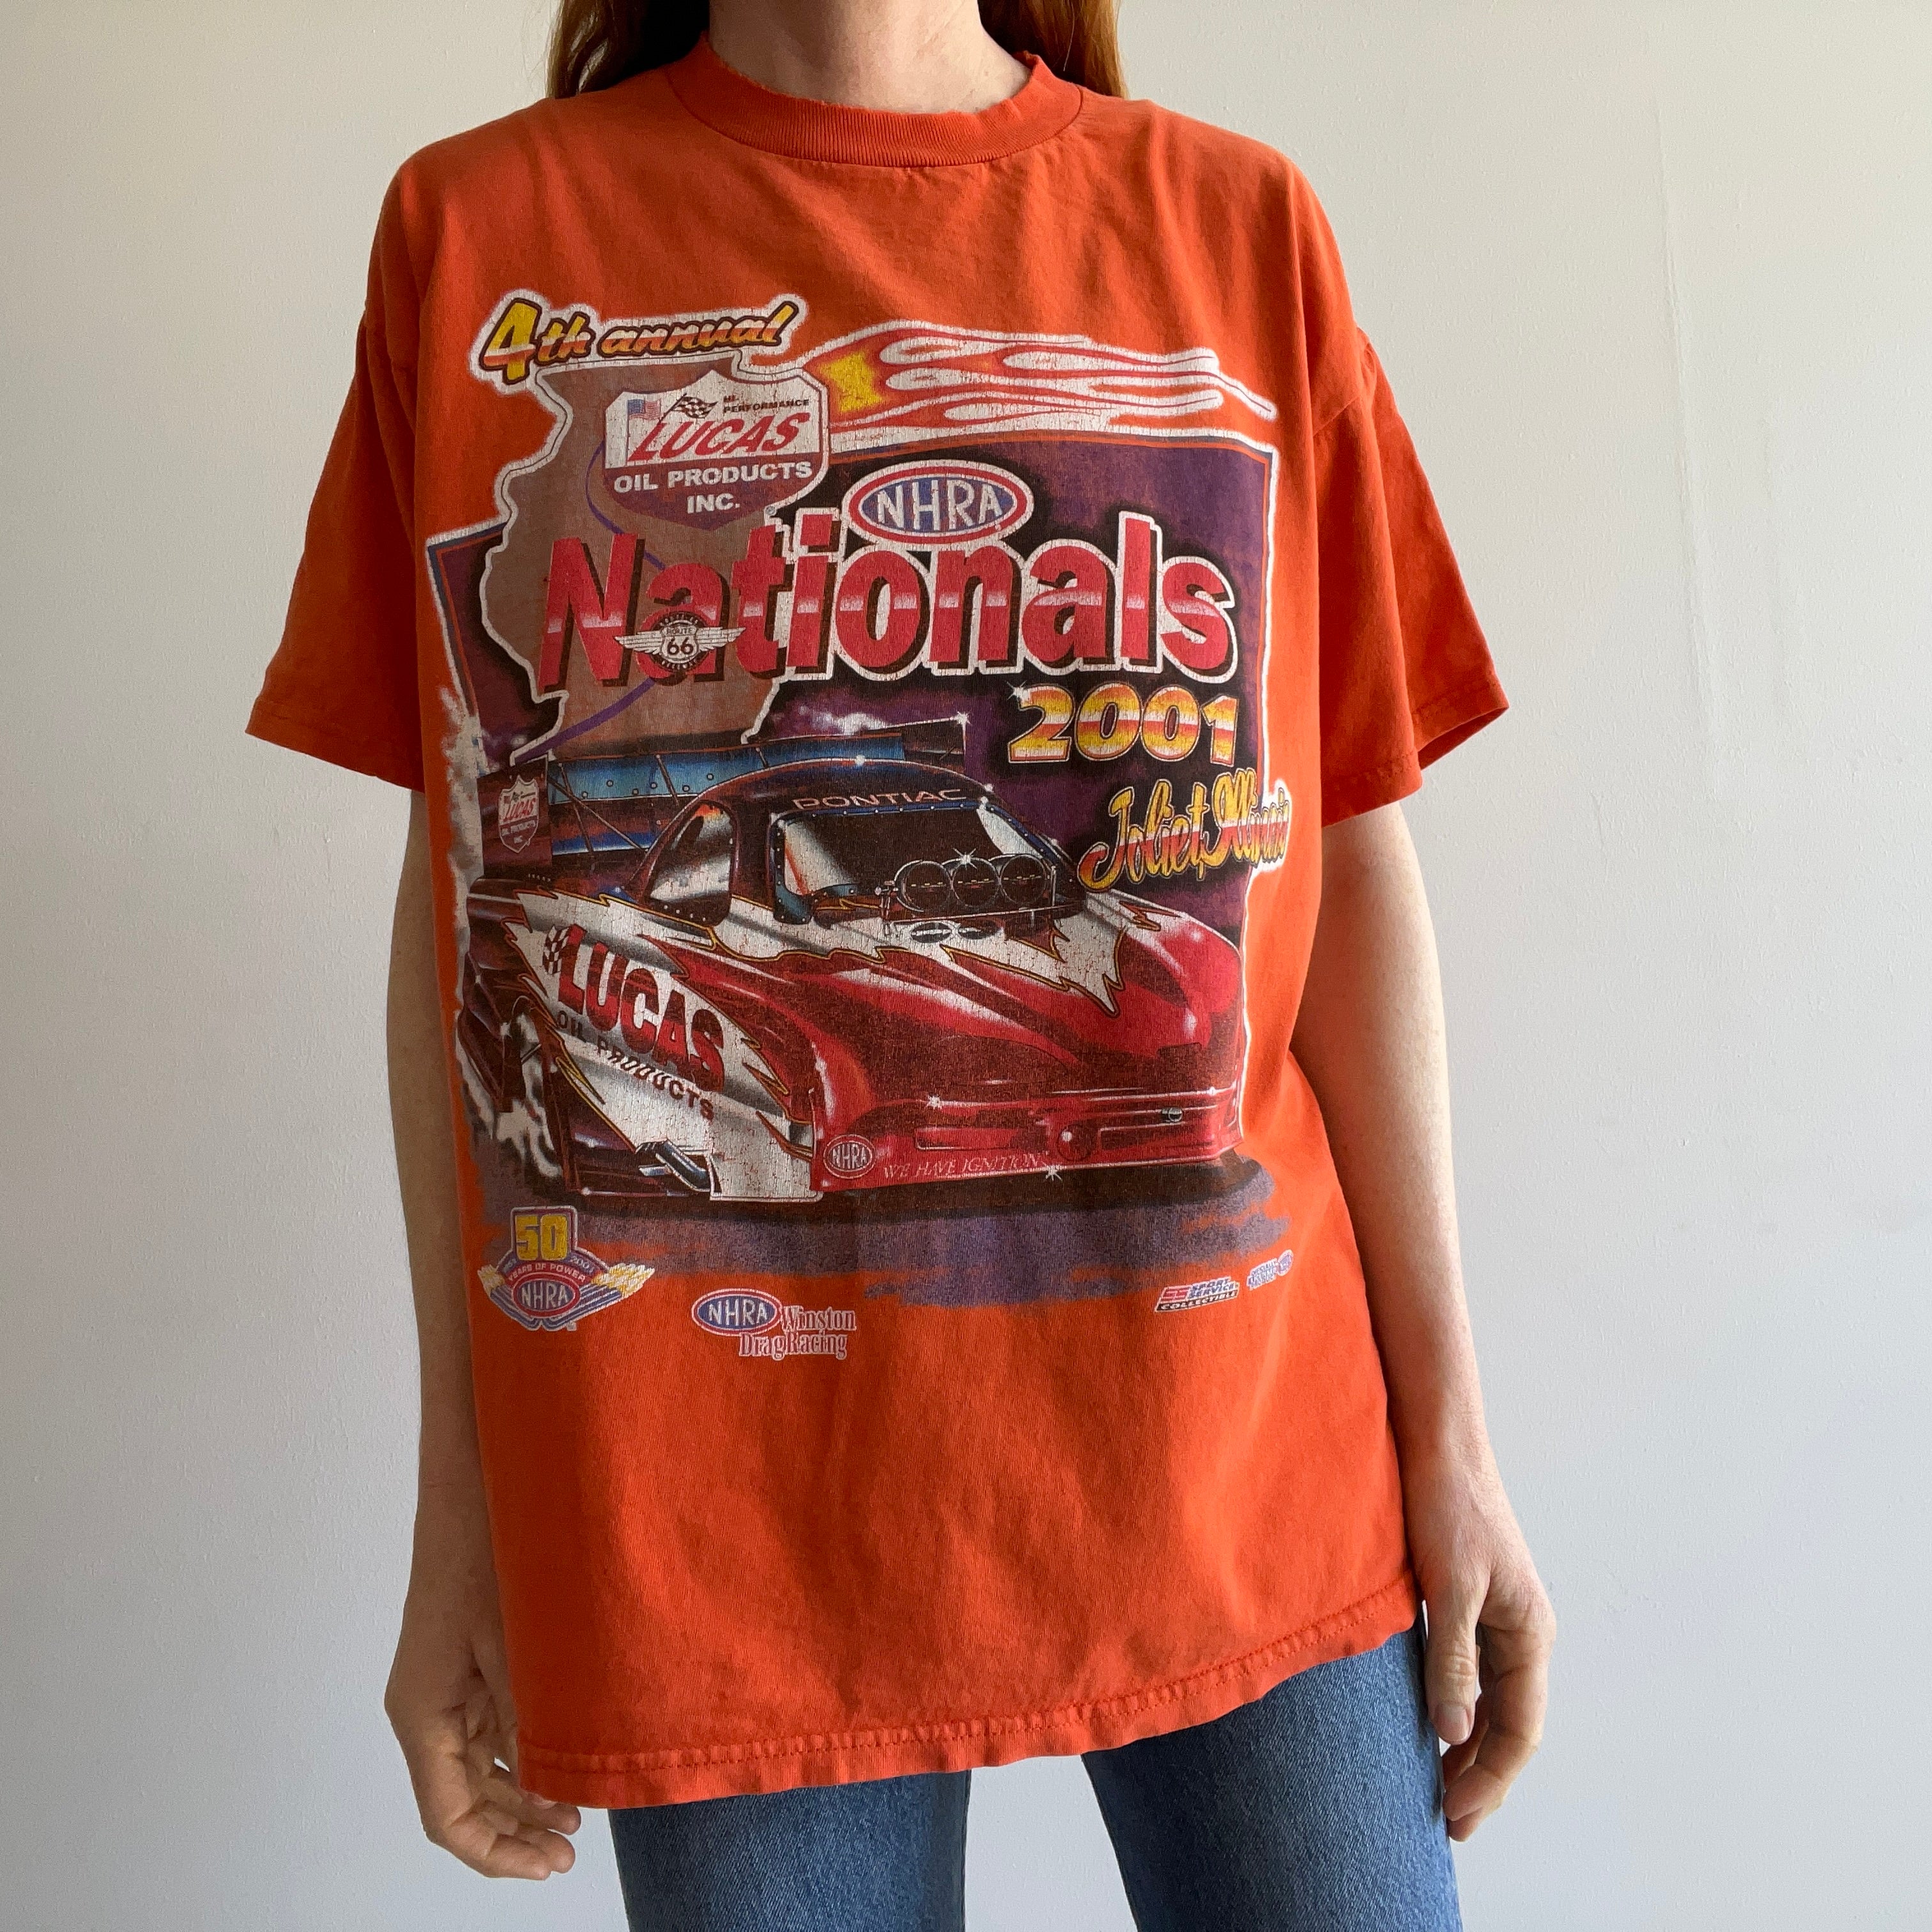 vintage drag racing shirts